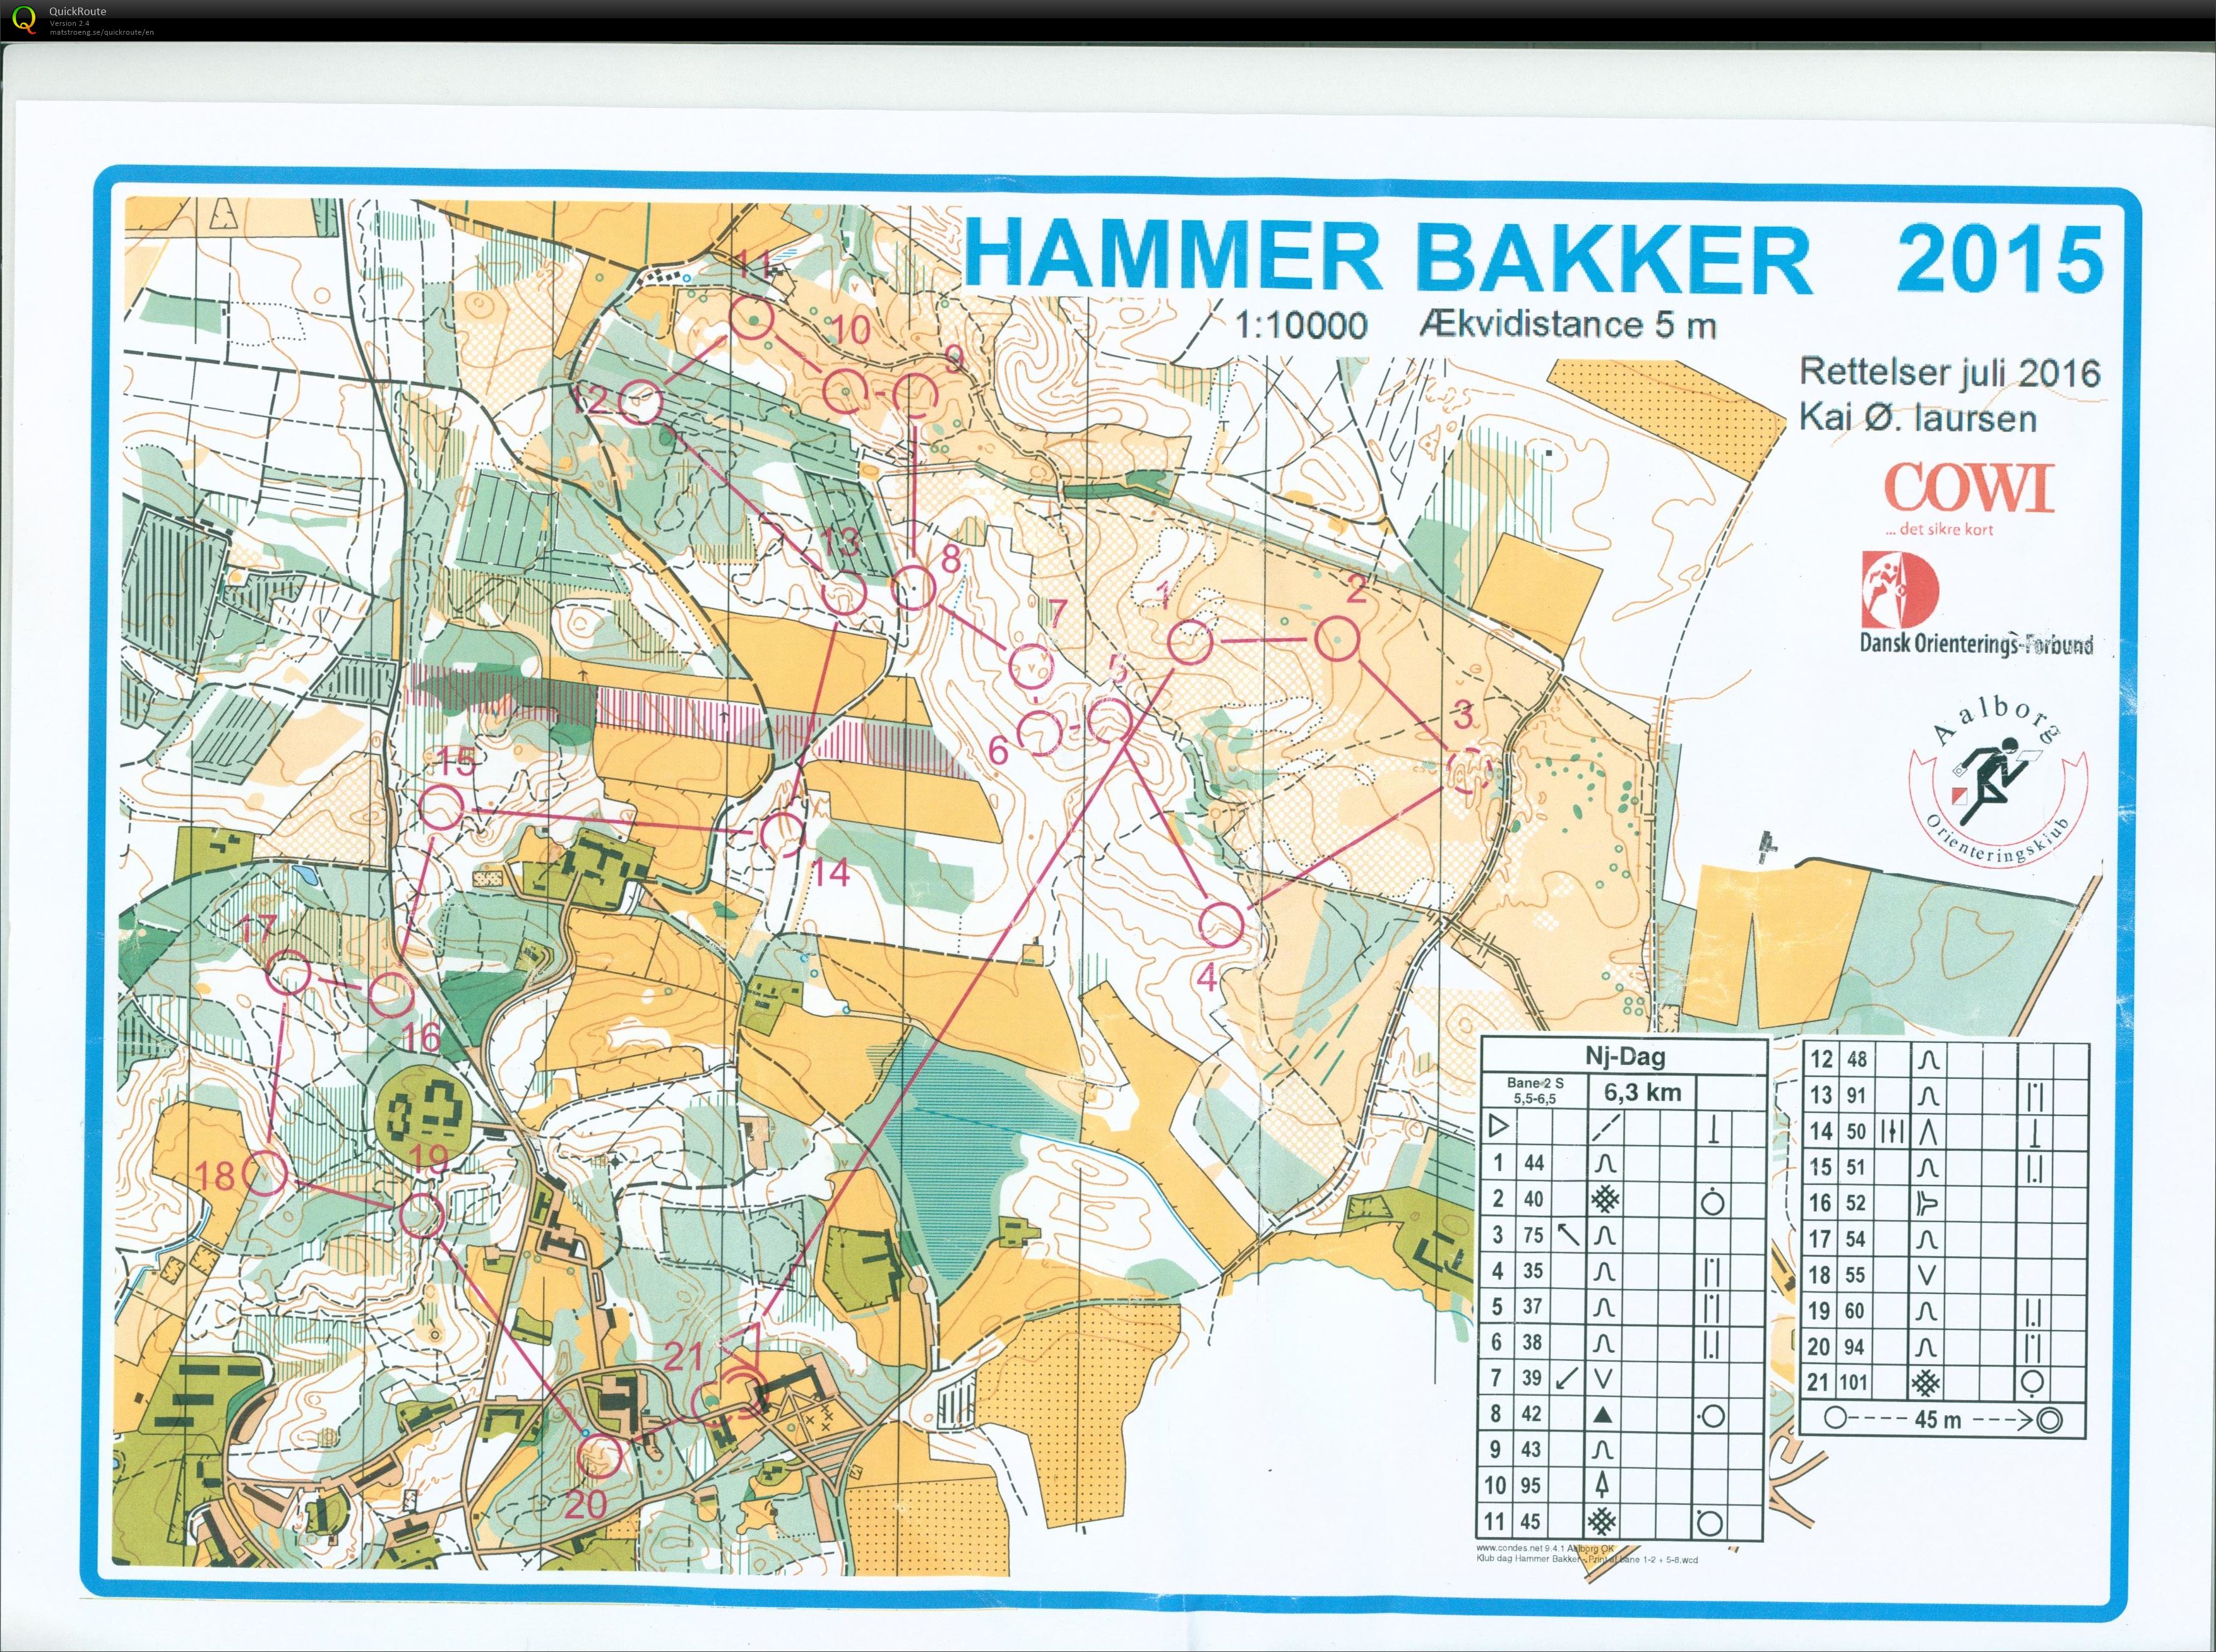 Hammer Bakker bane 2 Keld Gade (13-11-2016)